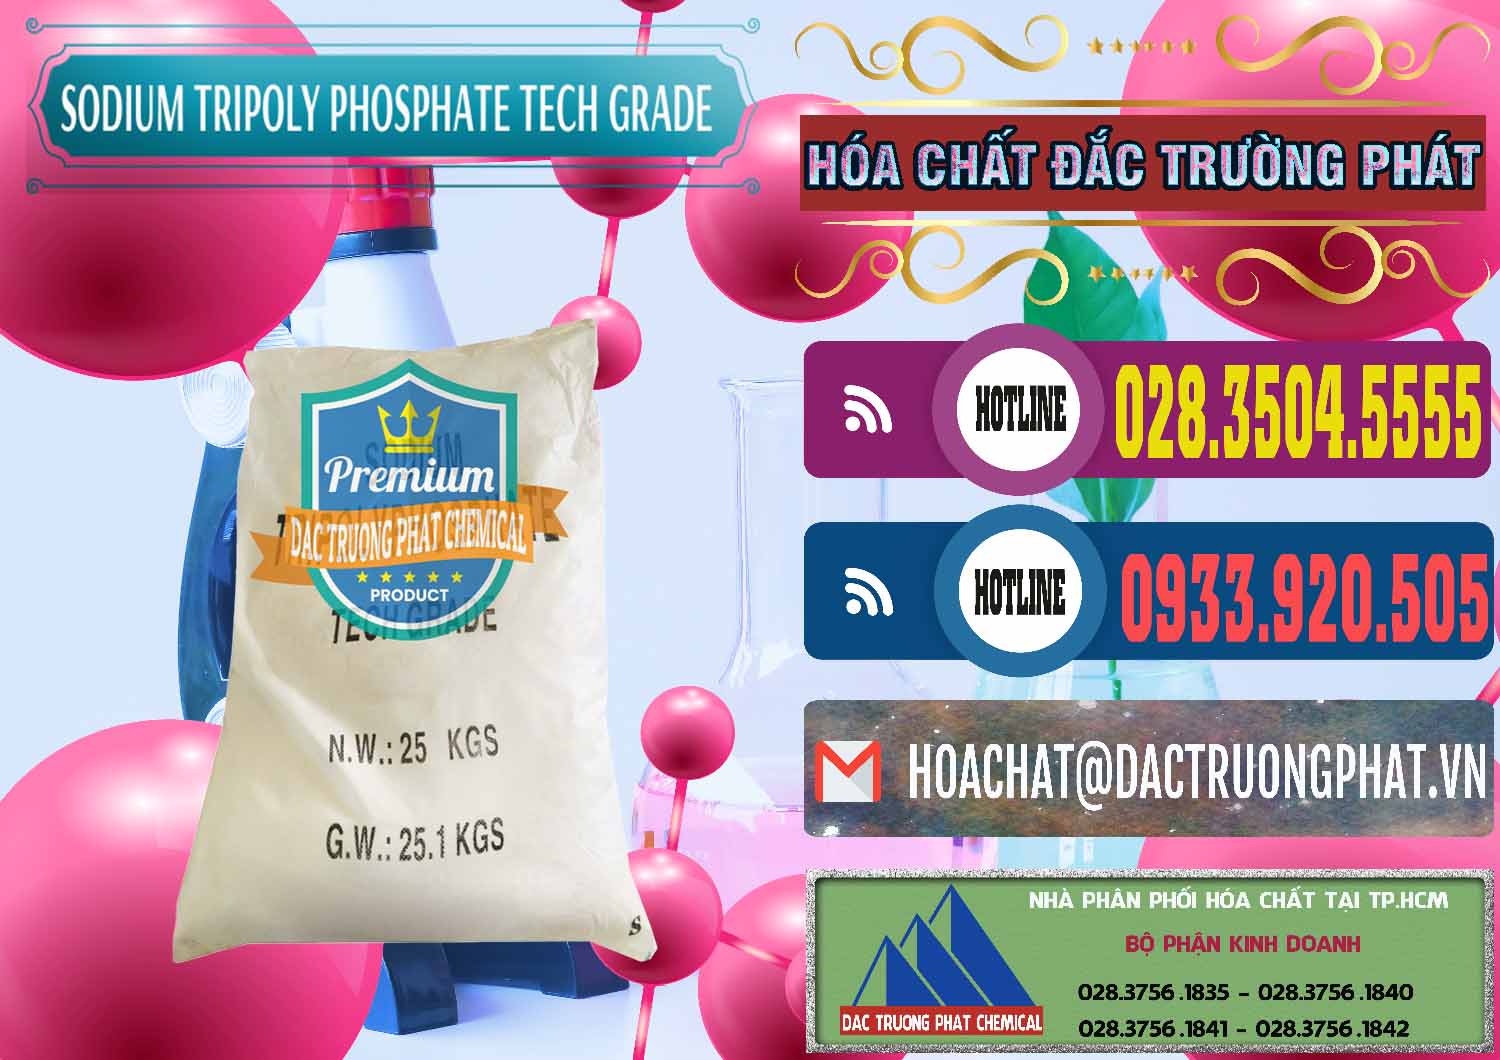 Công ty chuyên phân phối & bán Sodium Tripoly Phosphate - STPP Tech Grade Trung Quốc China - 0453 - Công ty chuyên kinh doanh & cung cấp hóa chất tại TP.HCM - muabanhoachat.com.vn